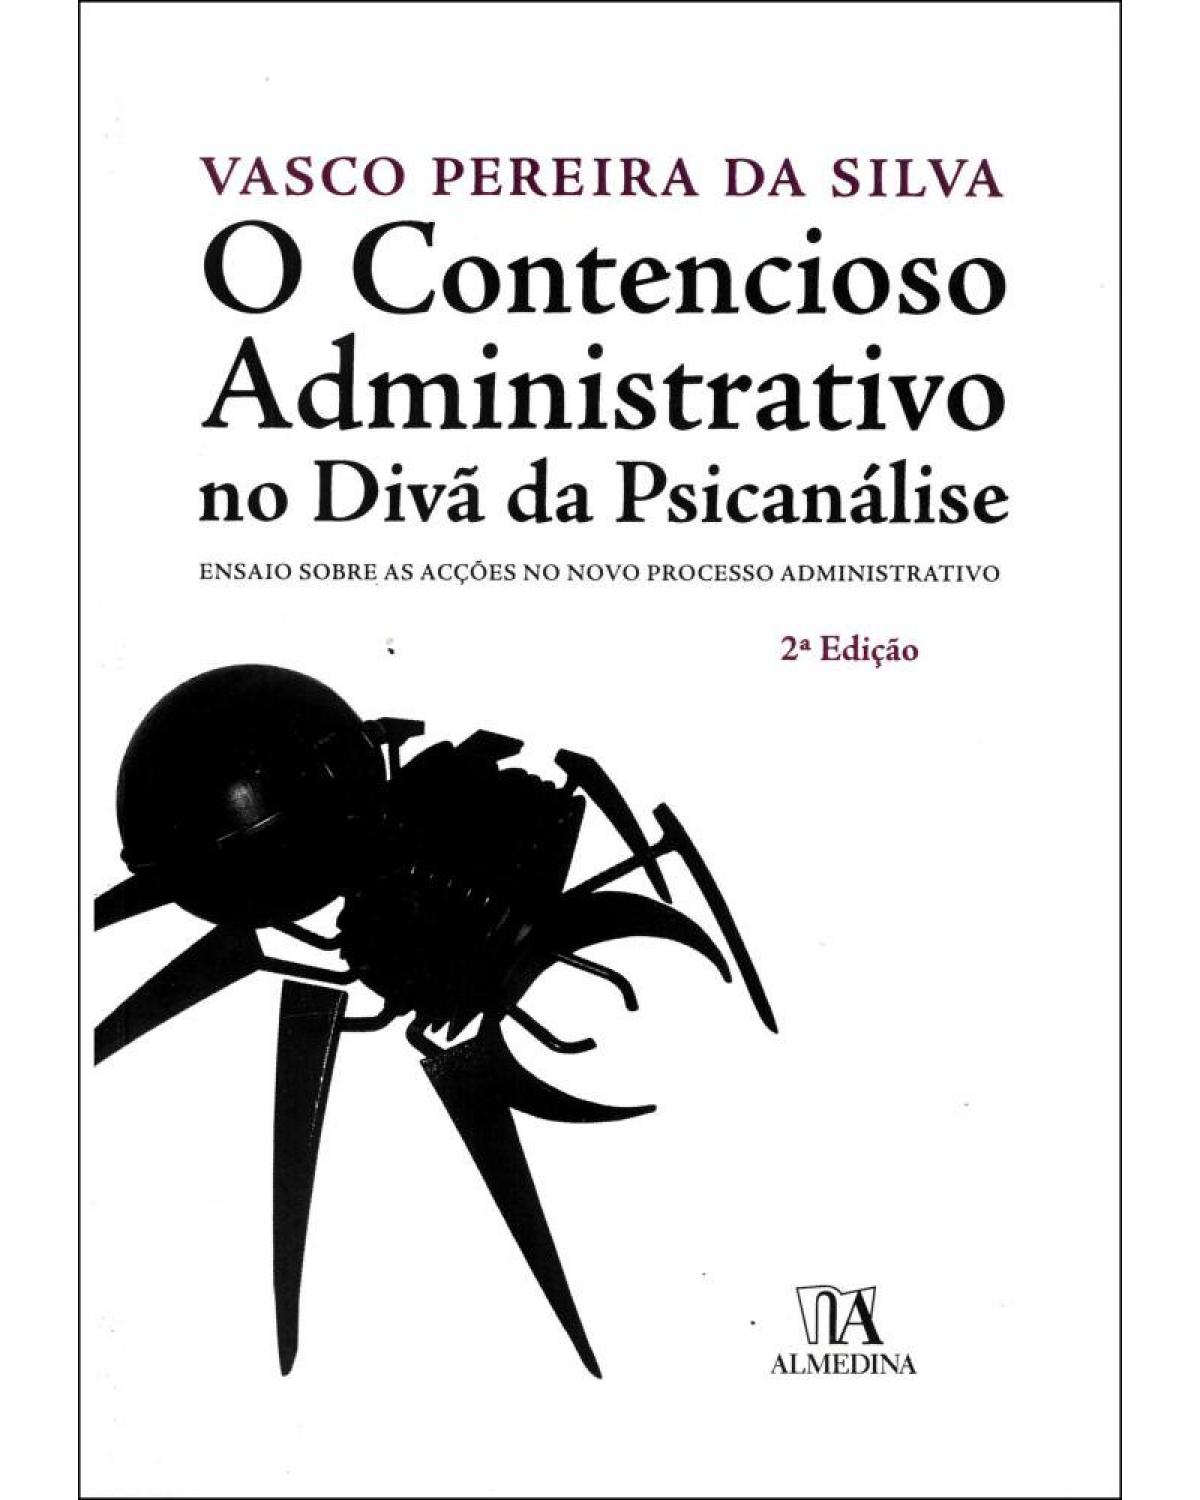 O contencioso administrativo no divã da psicanálise - 2ª Edição | 2009